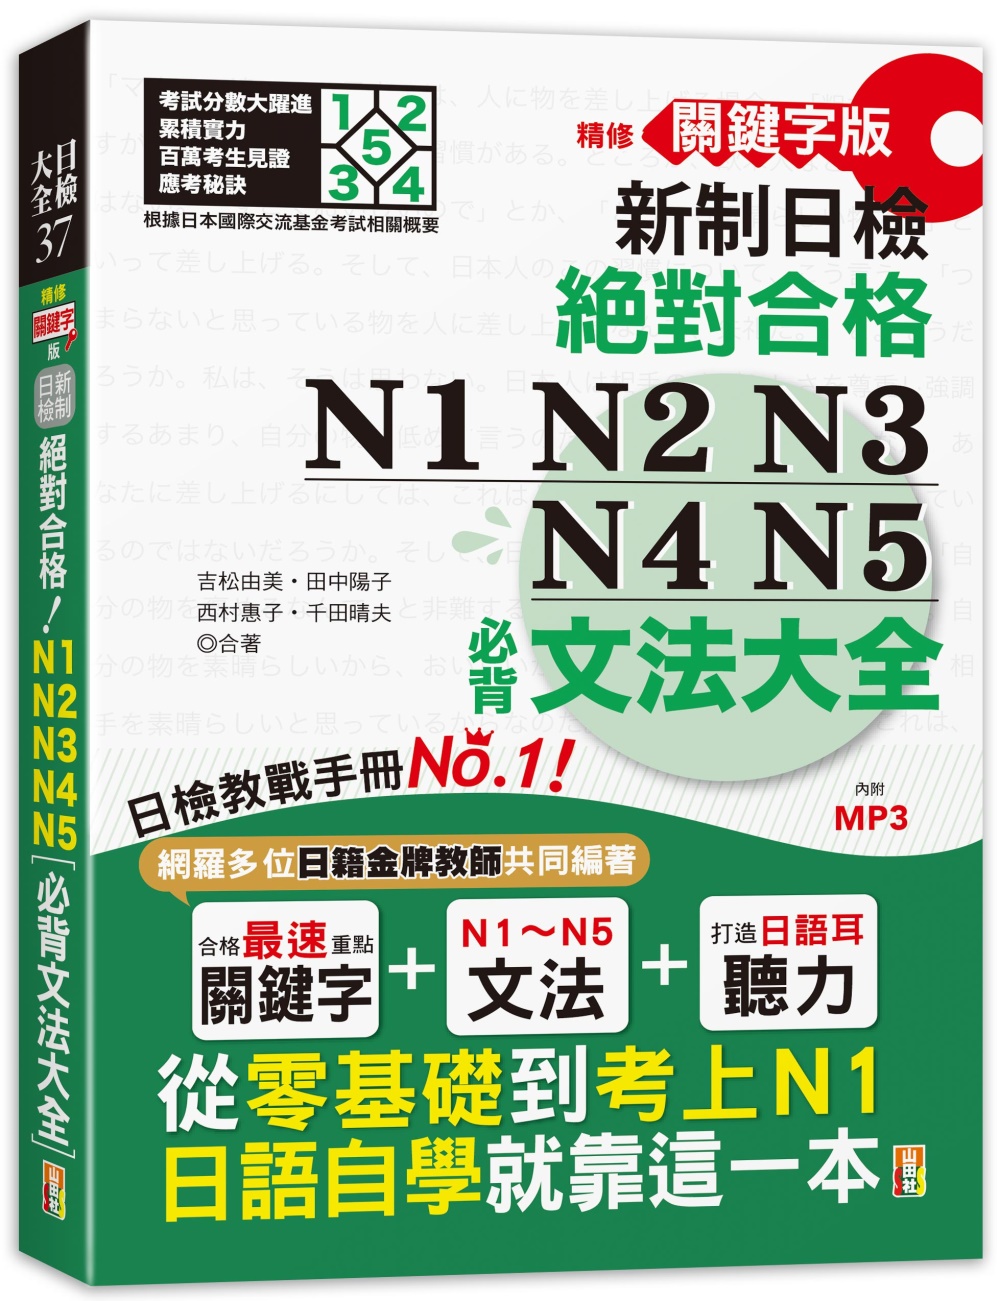 精修關鍵字版 新制日檢 絕對合格 N1,N2,N3,N4,N...